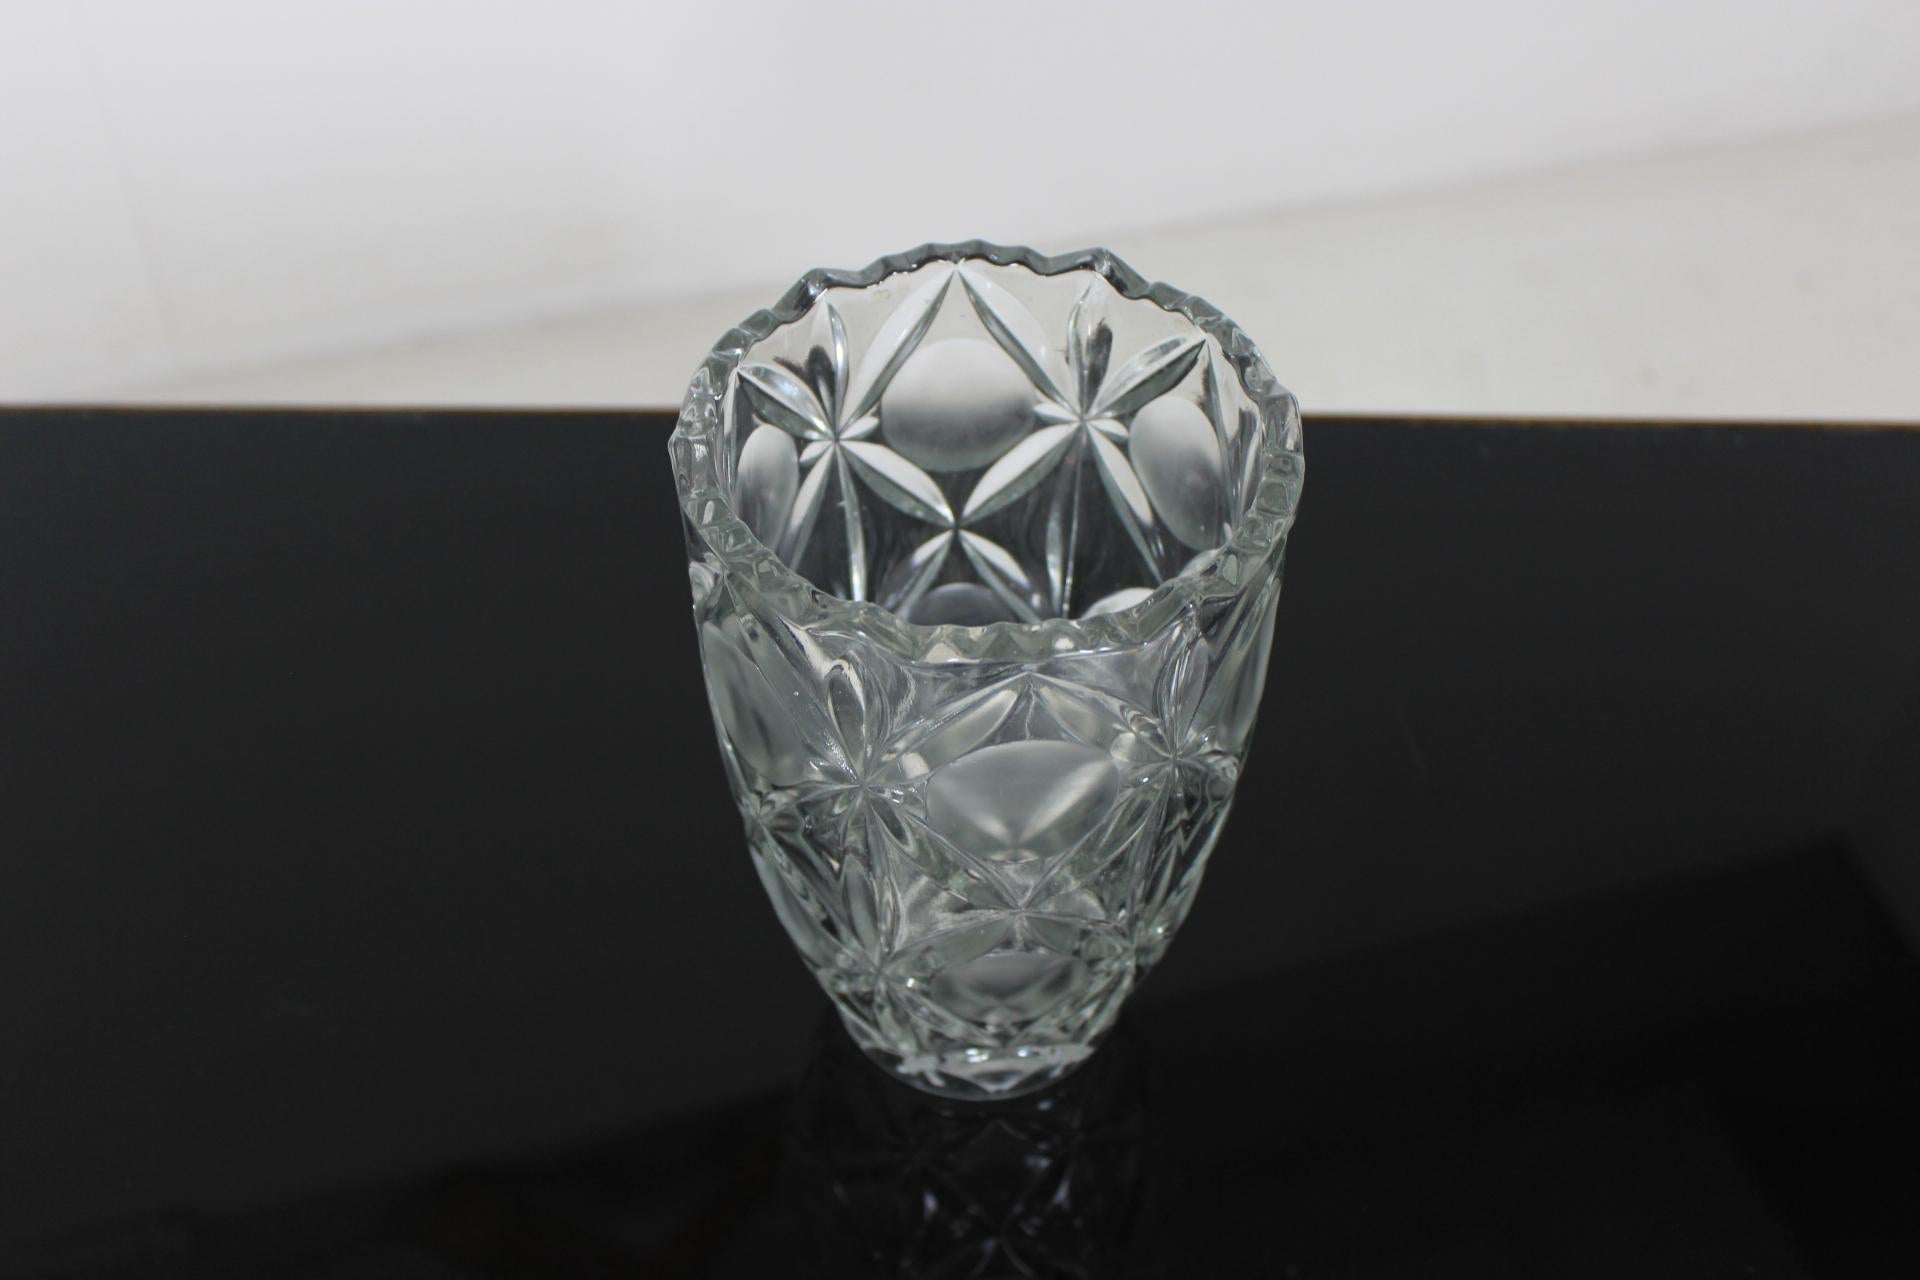 Le vase est fait de verre pur, de verre de meule. Fabriqué en Tchécoslovaquie. État original.